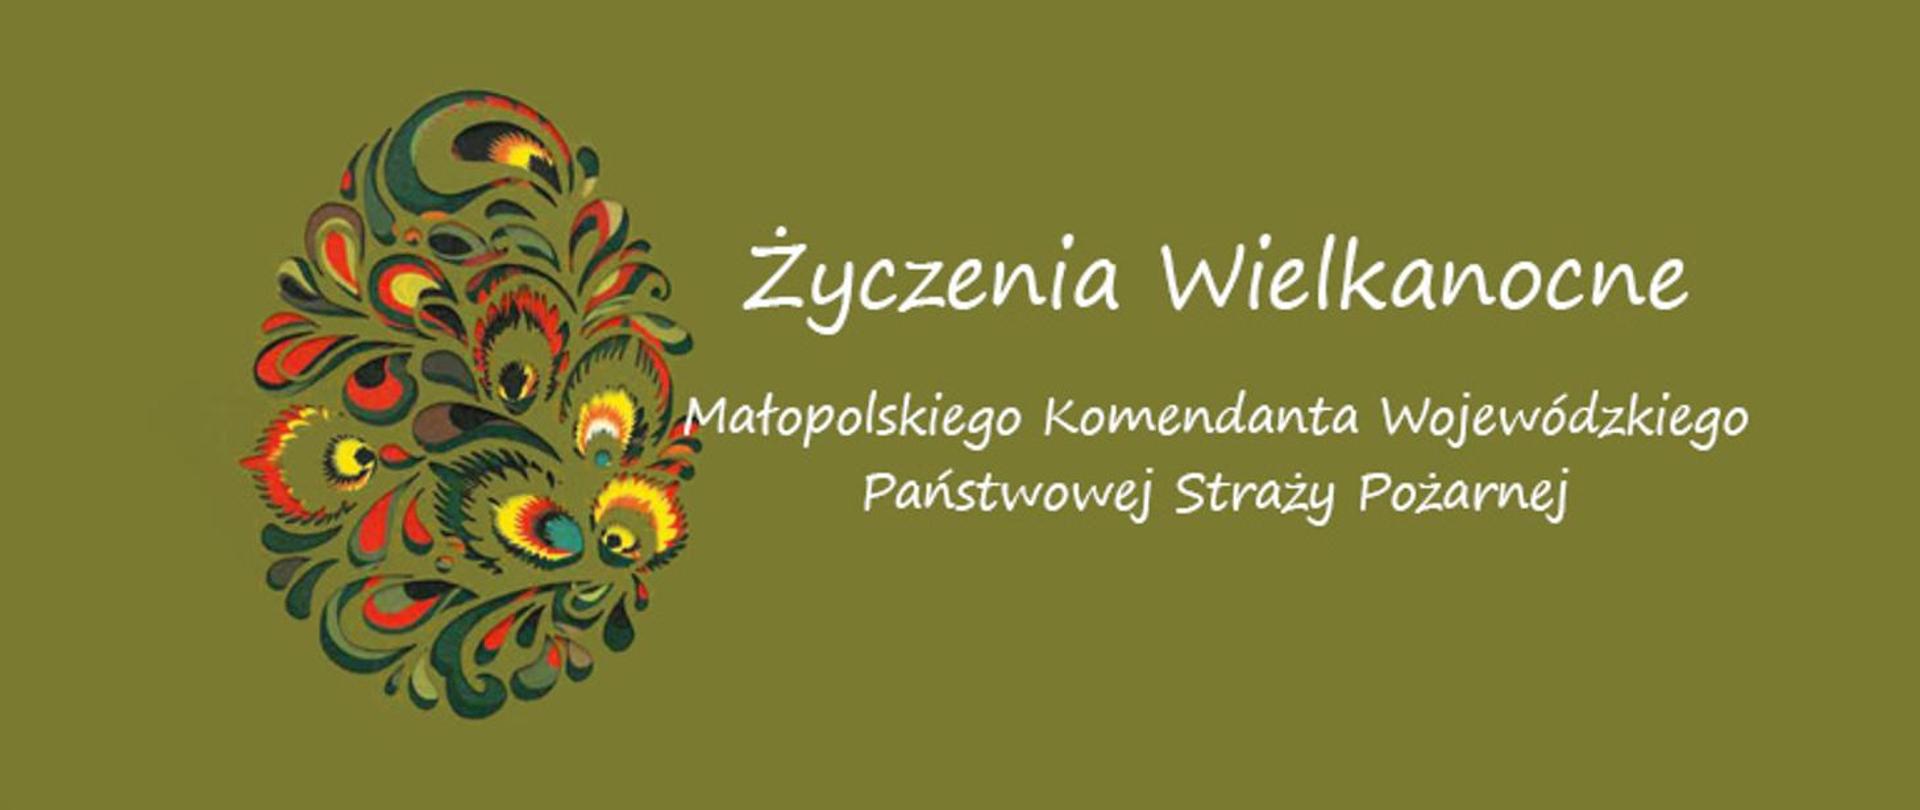 Życzenia świąteczne Małopolskiego Komendanta Wojewódzkiego PSP
